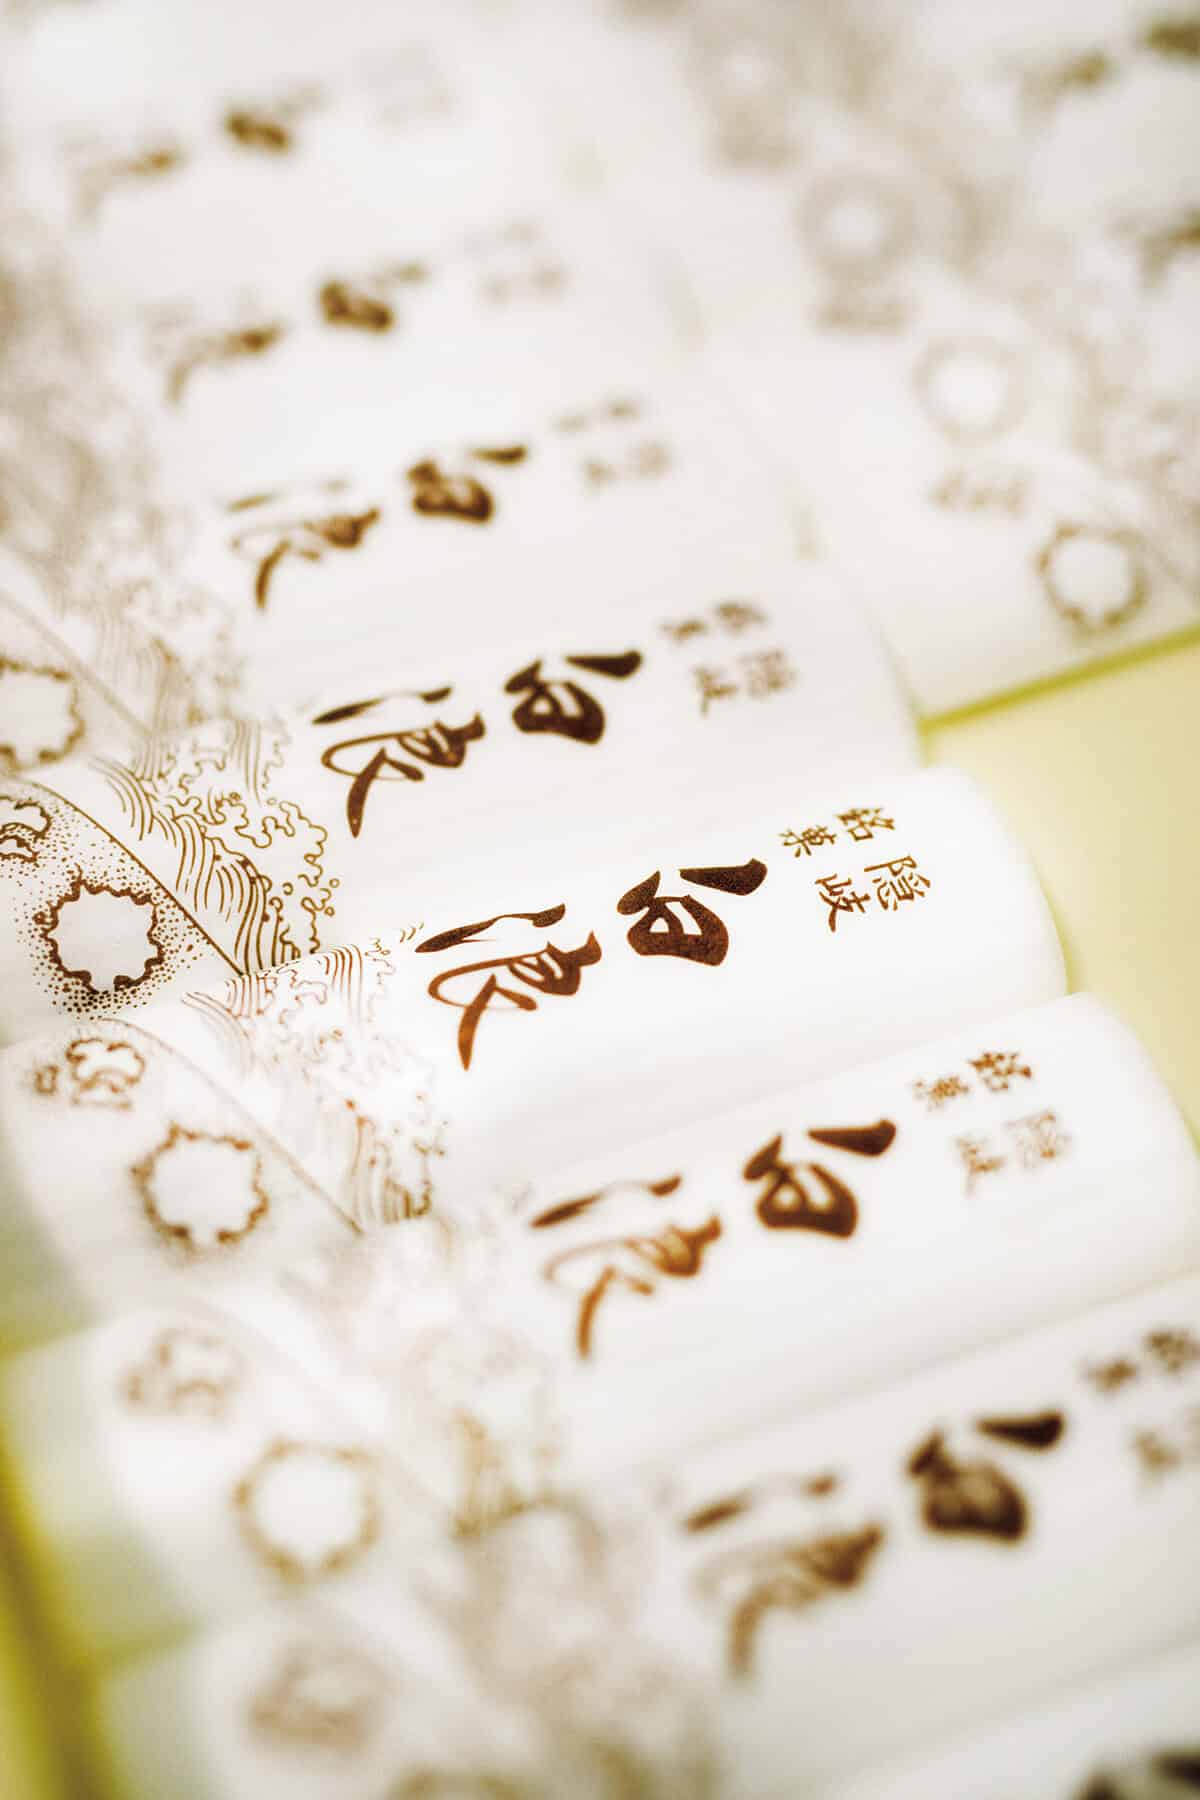 島根〈つなかけ〉伝統菓子「白浪」